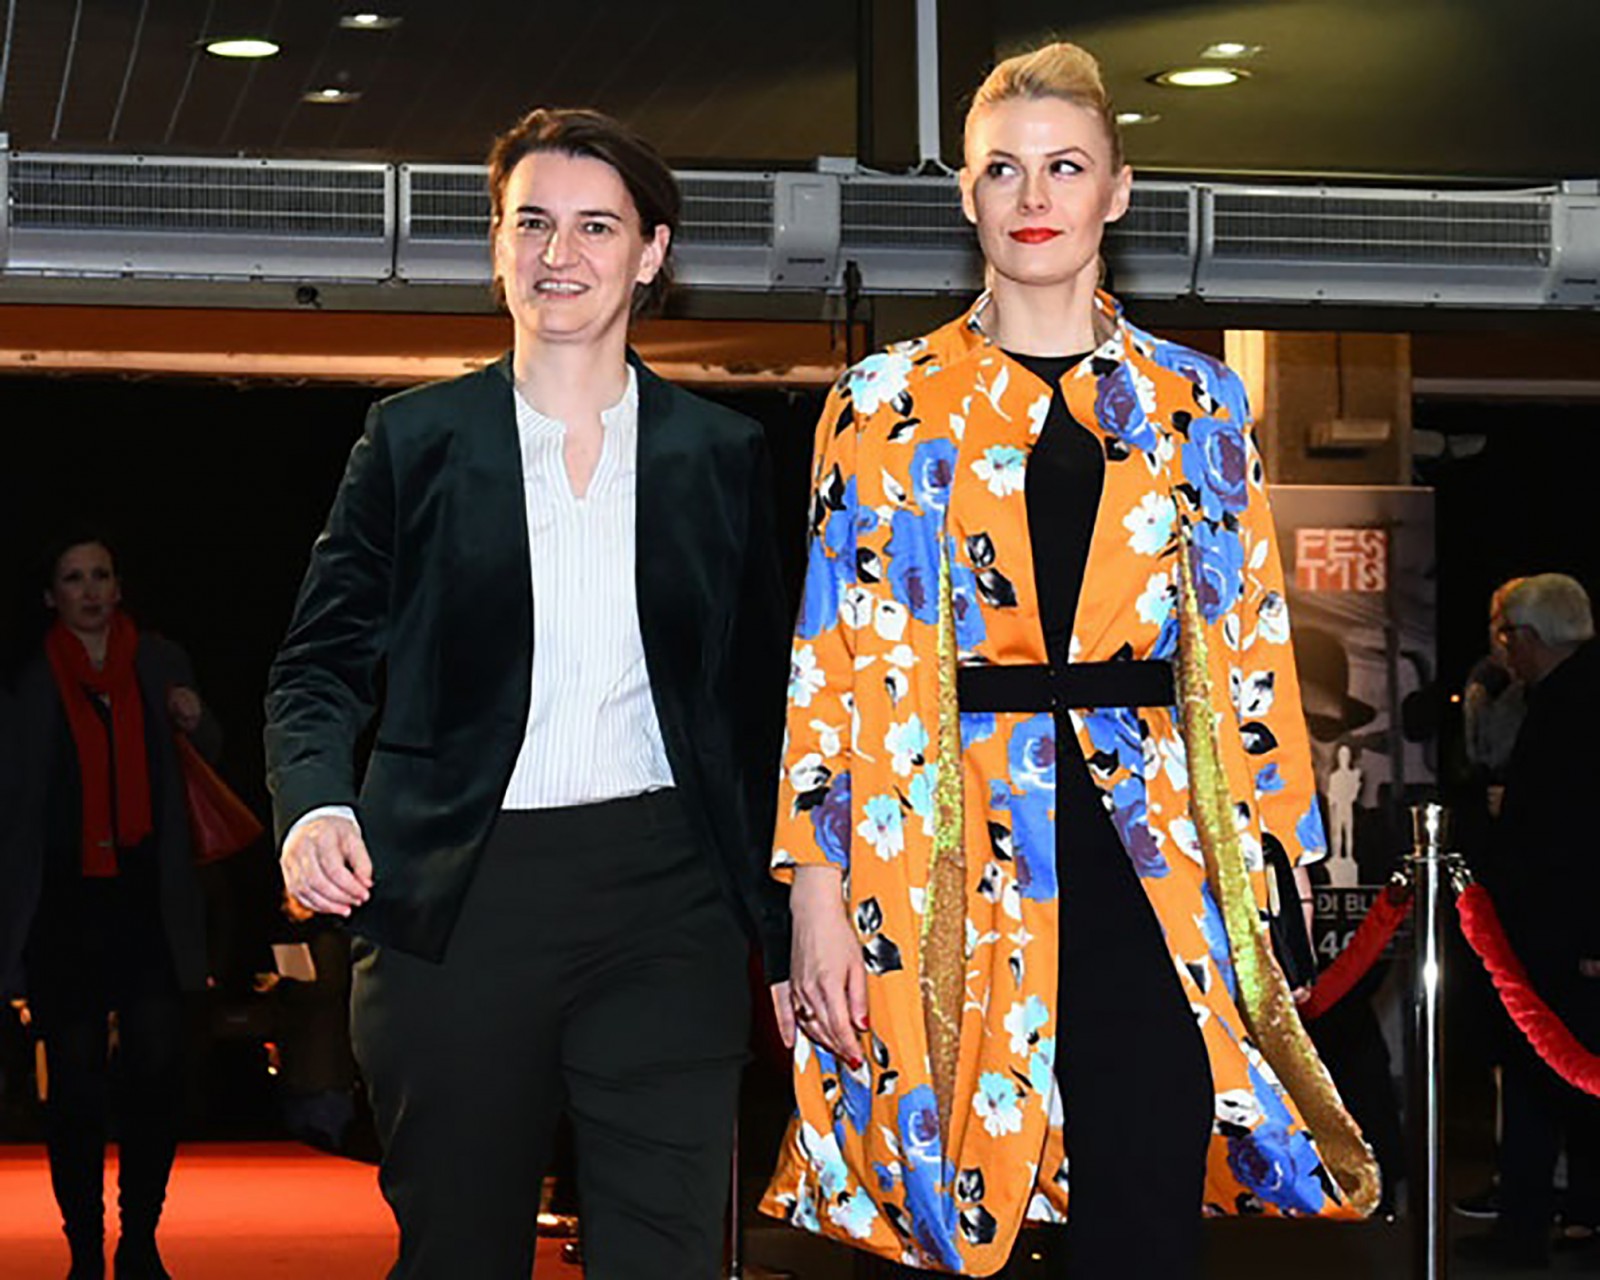 Thủ tướng Serbia Brnabic (trái) và “bạn gái” Djurdjic tại một sự kiện thời trang. Ảnh: Novosti